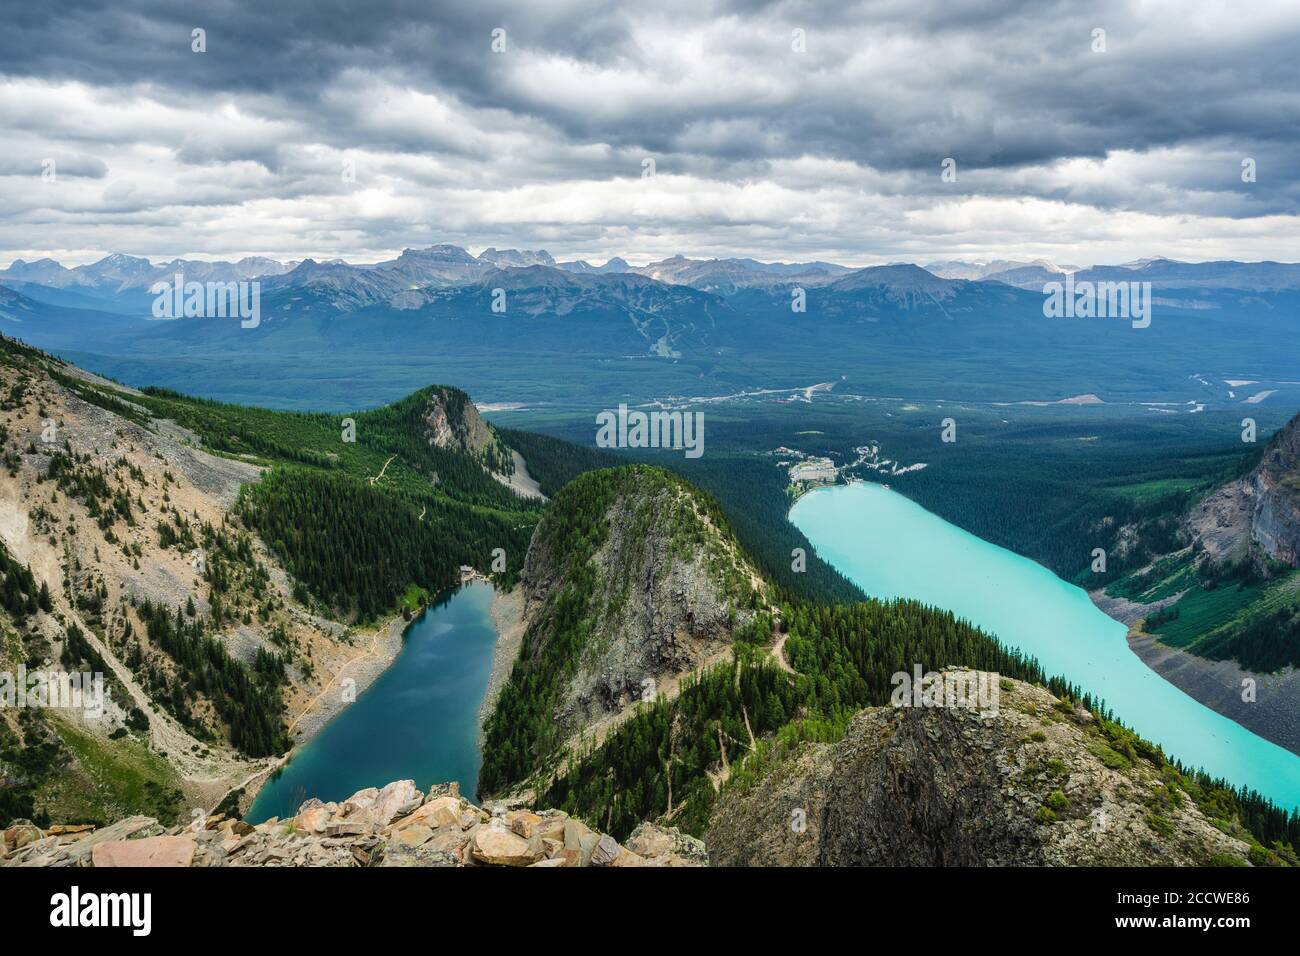 Vue panoramique de Moody montrant le lac Louise et le lac Agnes dans le parc national Banff, Alberta, Canada. Banque D'Images